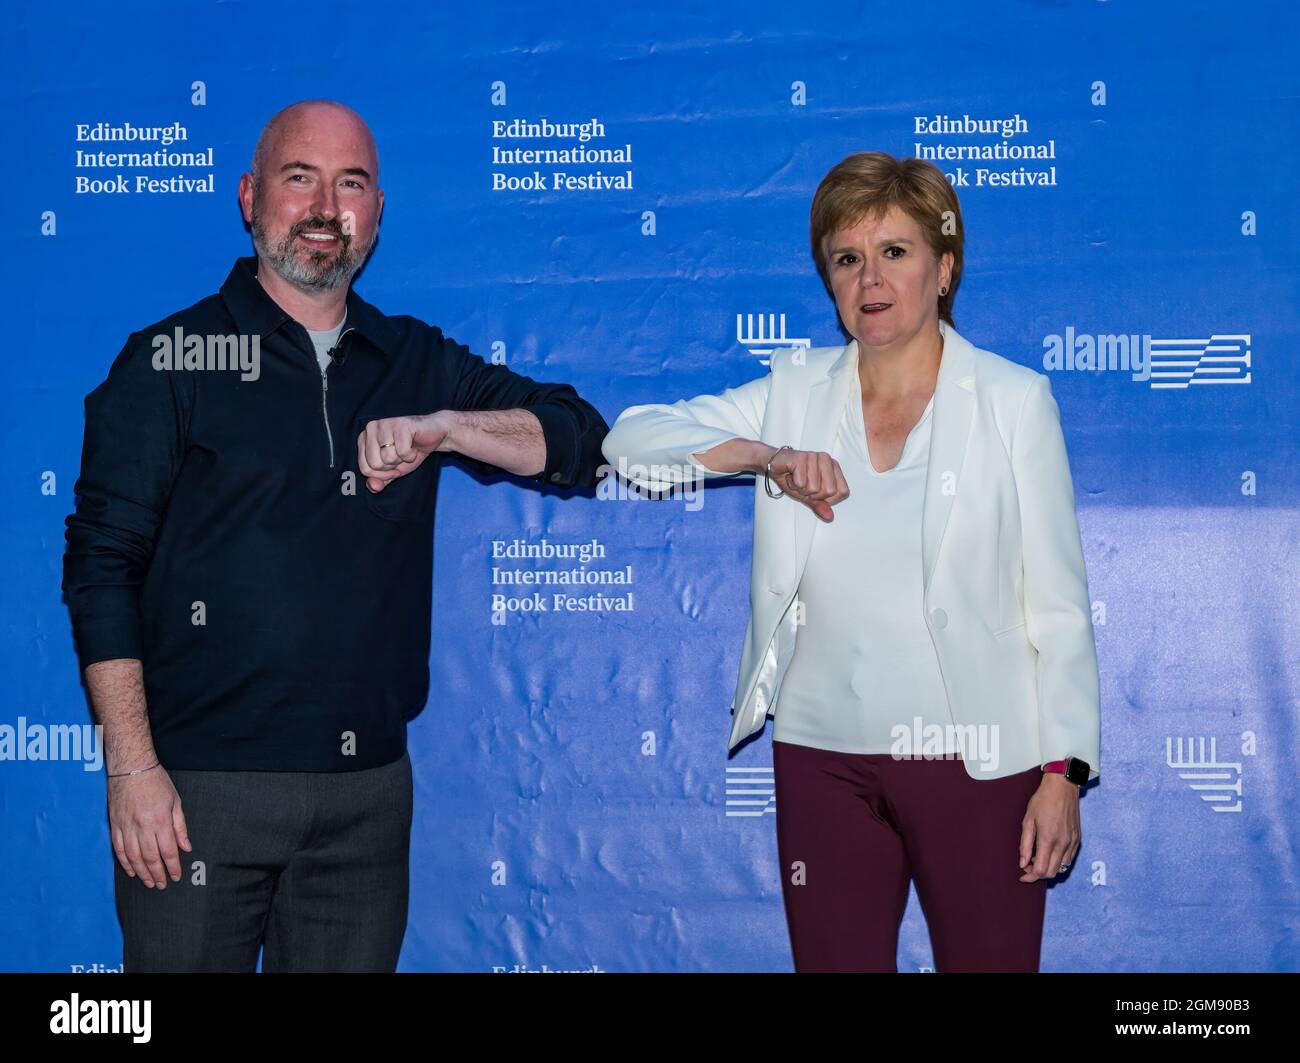 Auteur Douglas Stuart et le premier ministre Nicola Sturgeon saluent le coude au festival international du livre d'Édimbourg, Écosse, Royaume-Uni Banque D'Images